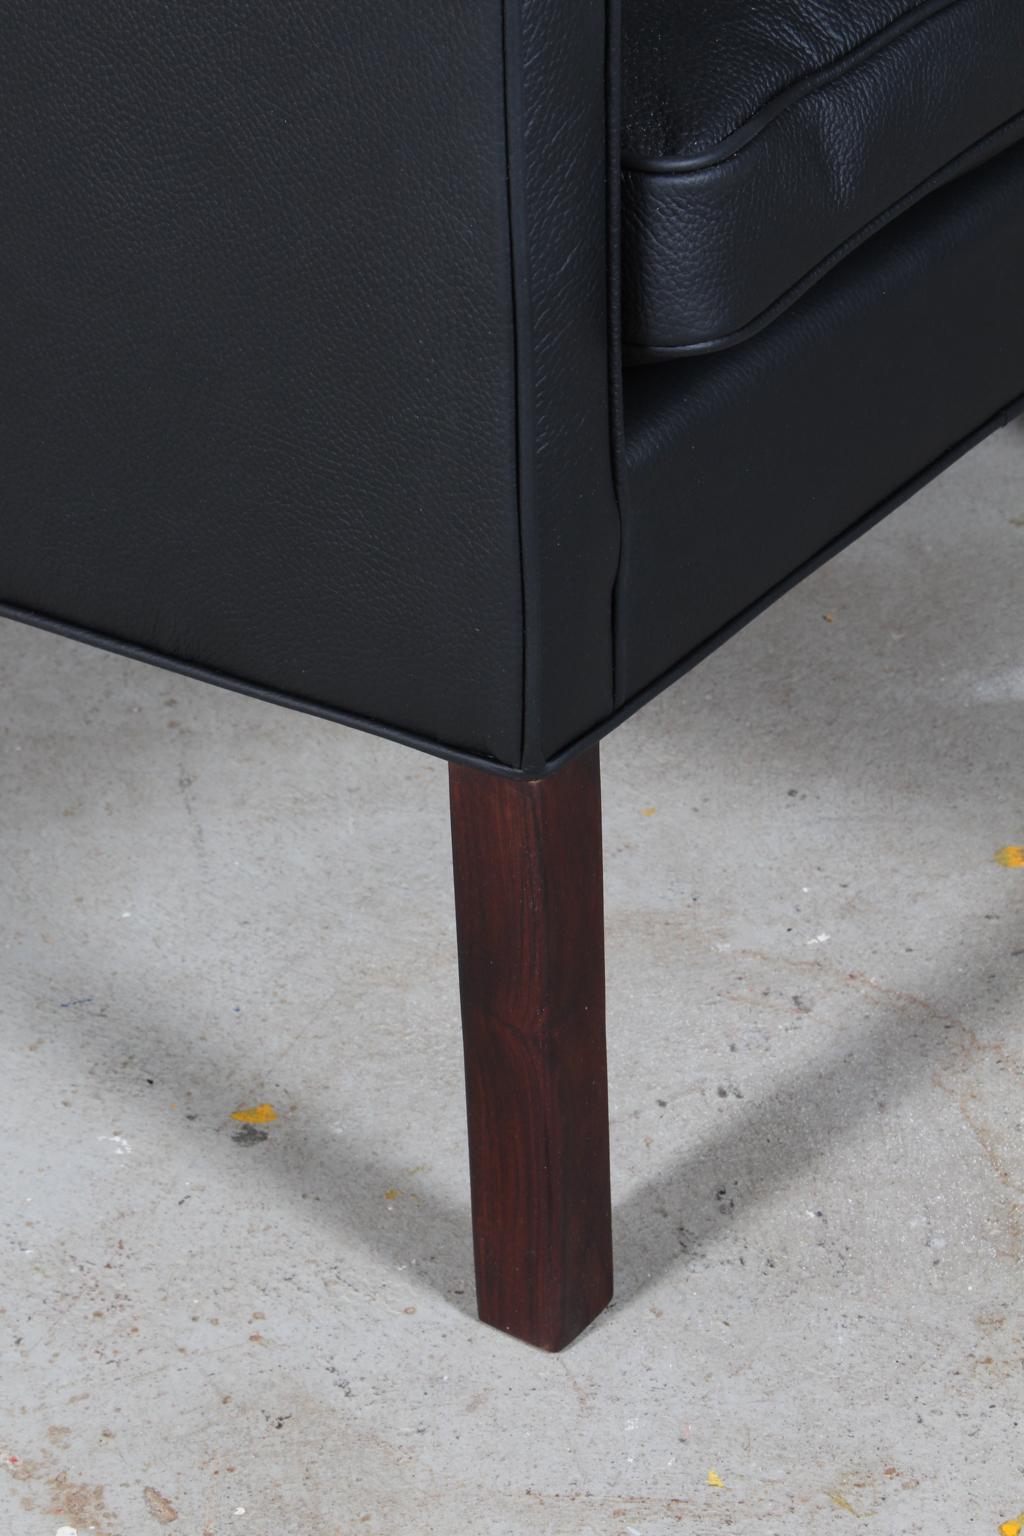 Danish Børge Mogensen Lounge Chair, Model 2207, New black leather upholstery